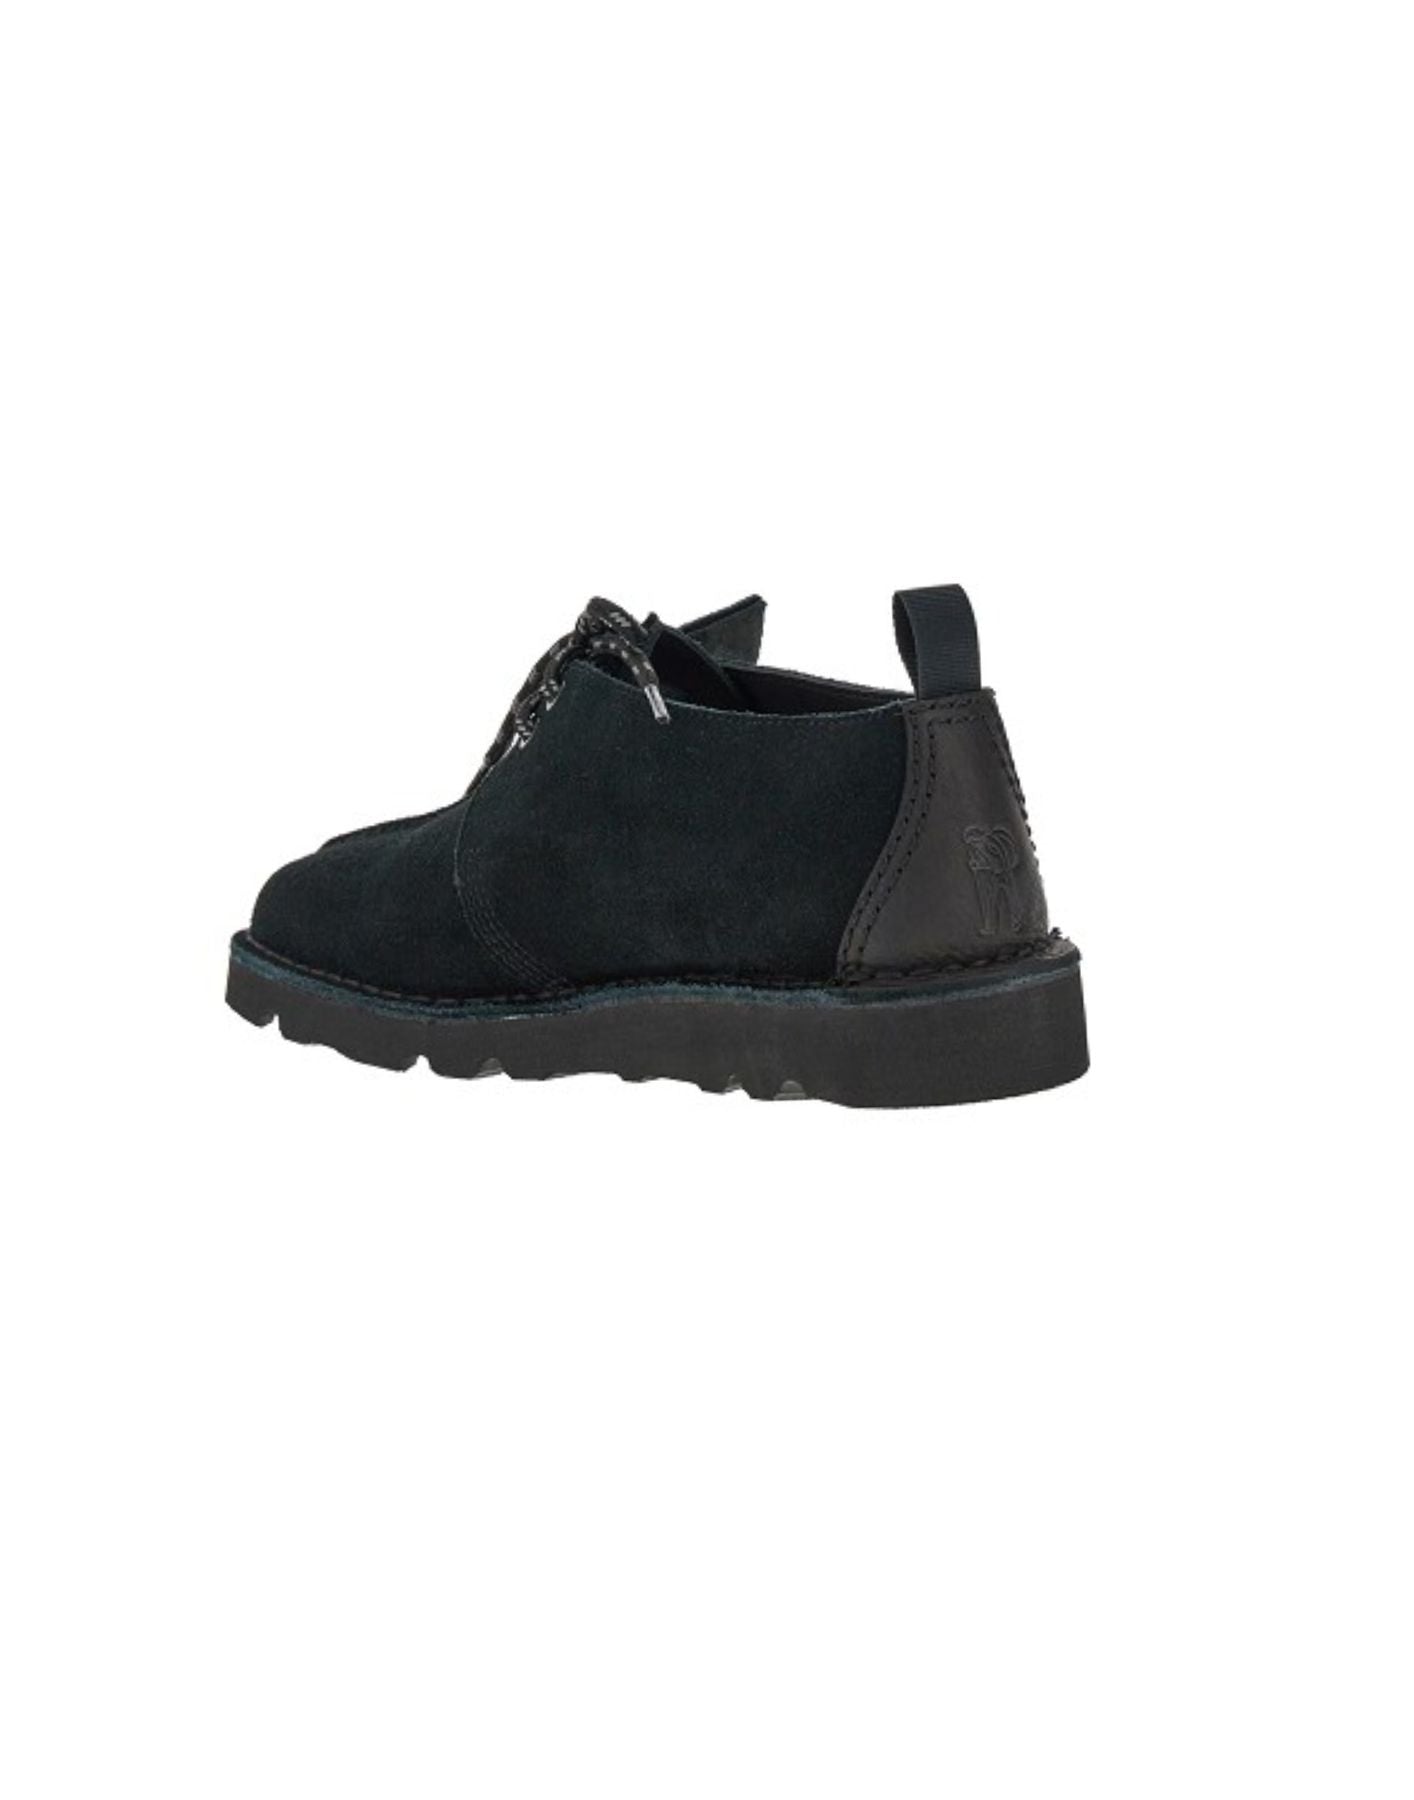 Zapatos para hombre DESERT TREKGTX BLACK SDE Clarks Originals